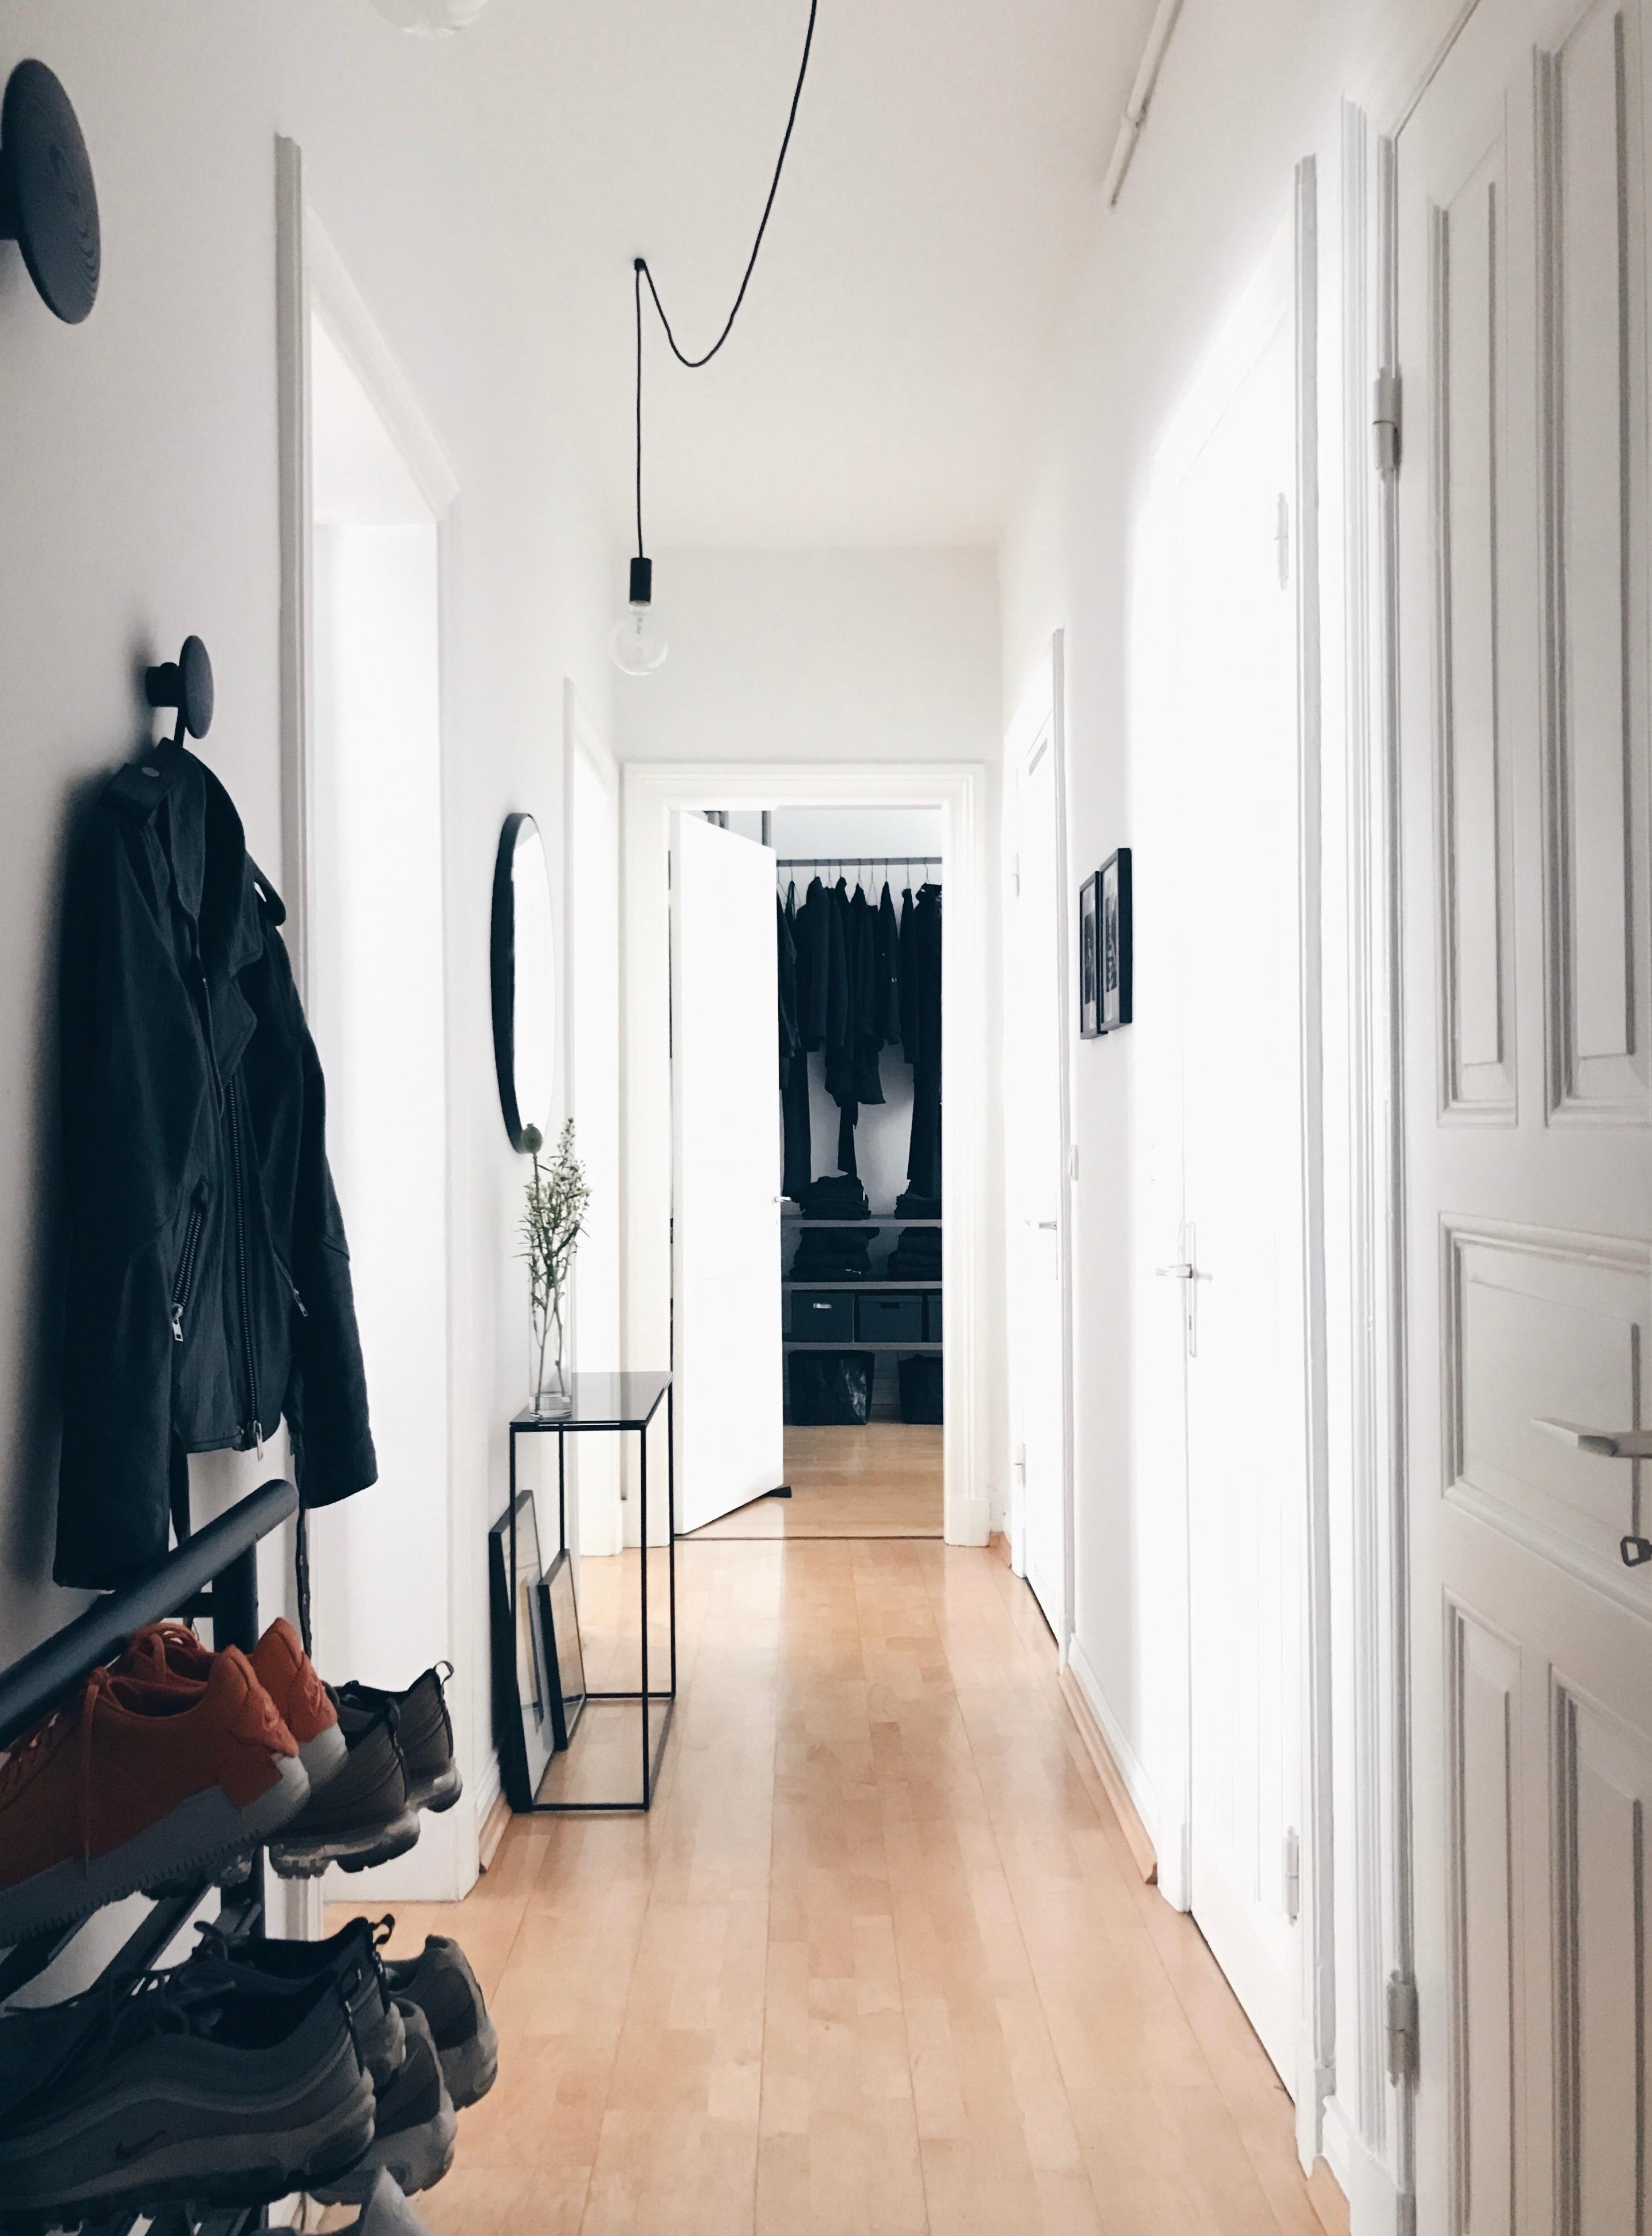 Weiter geht die #livingchallenge mit #flur ..
#altbau #altbauliebe #minimalism #simplicity #whiteliving #hallway 